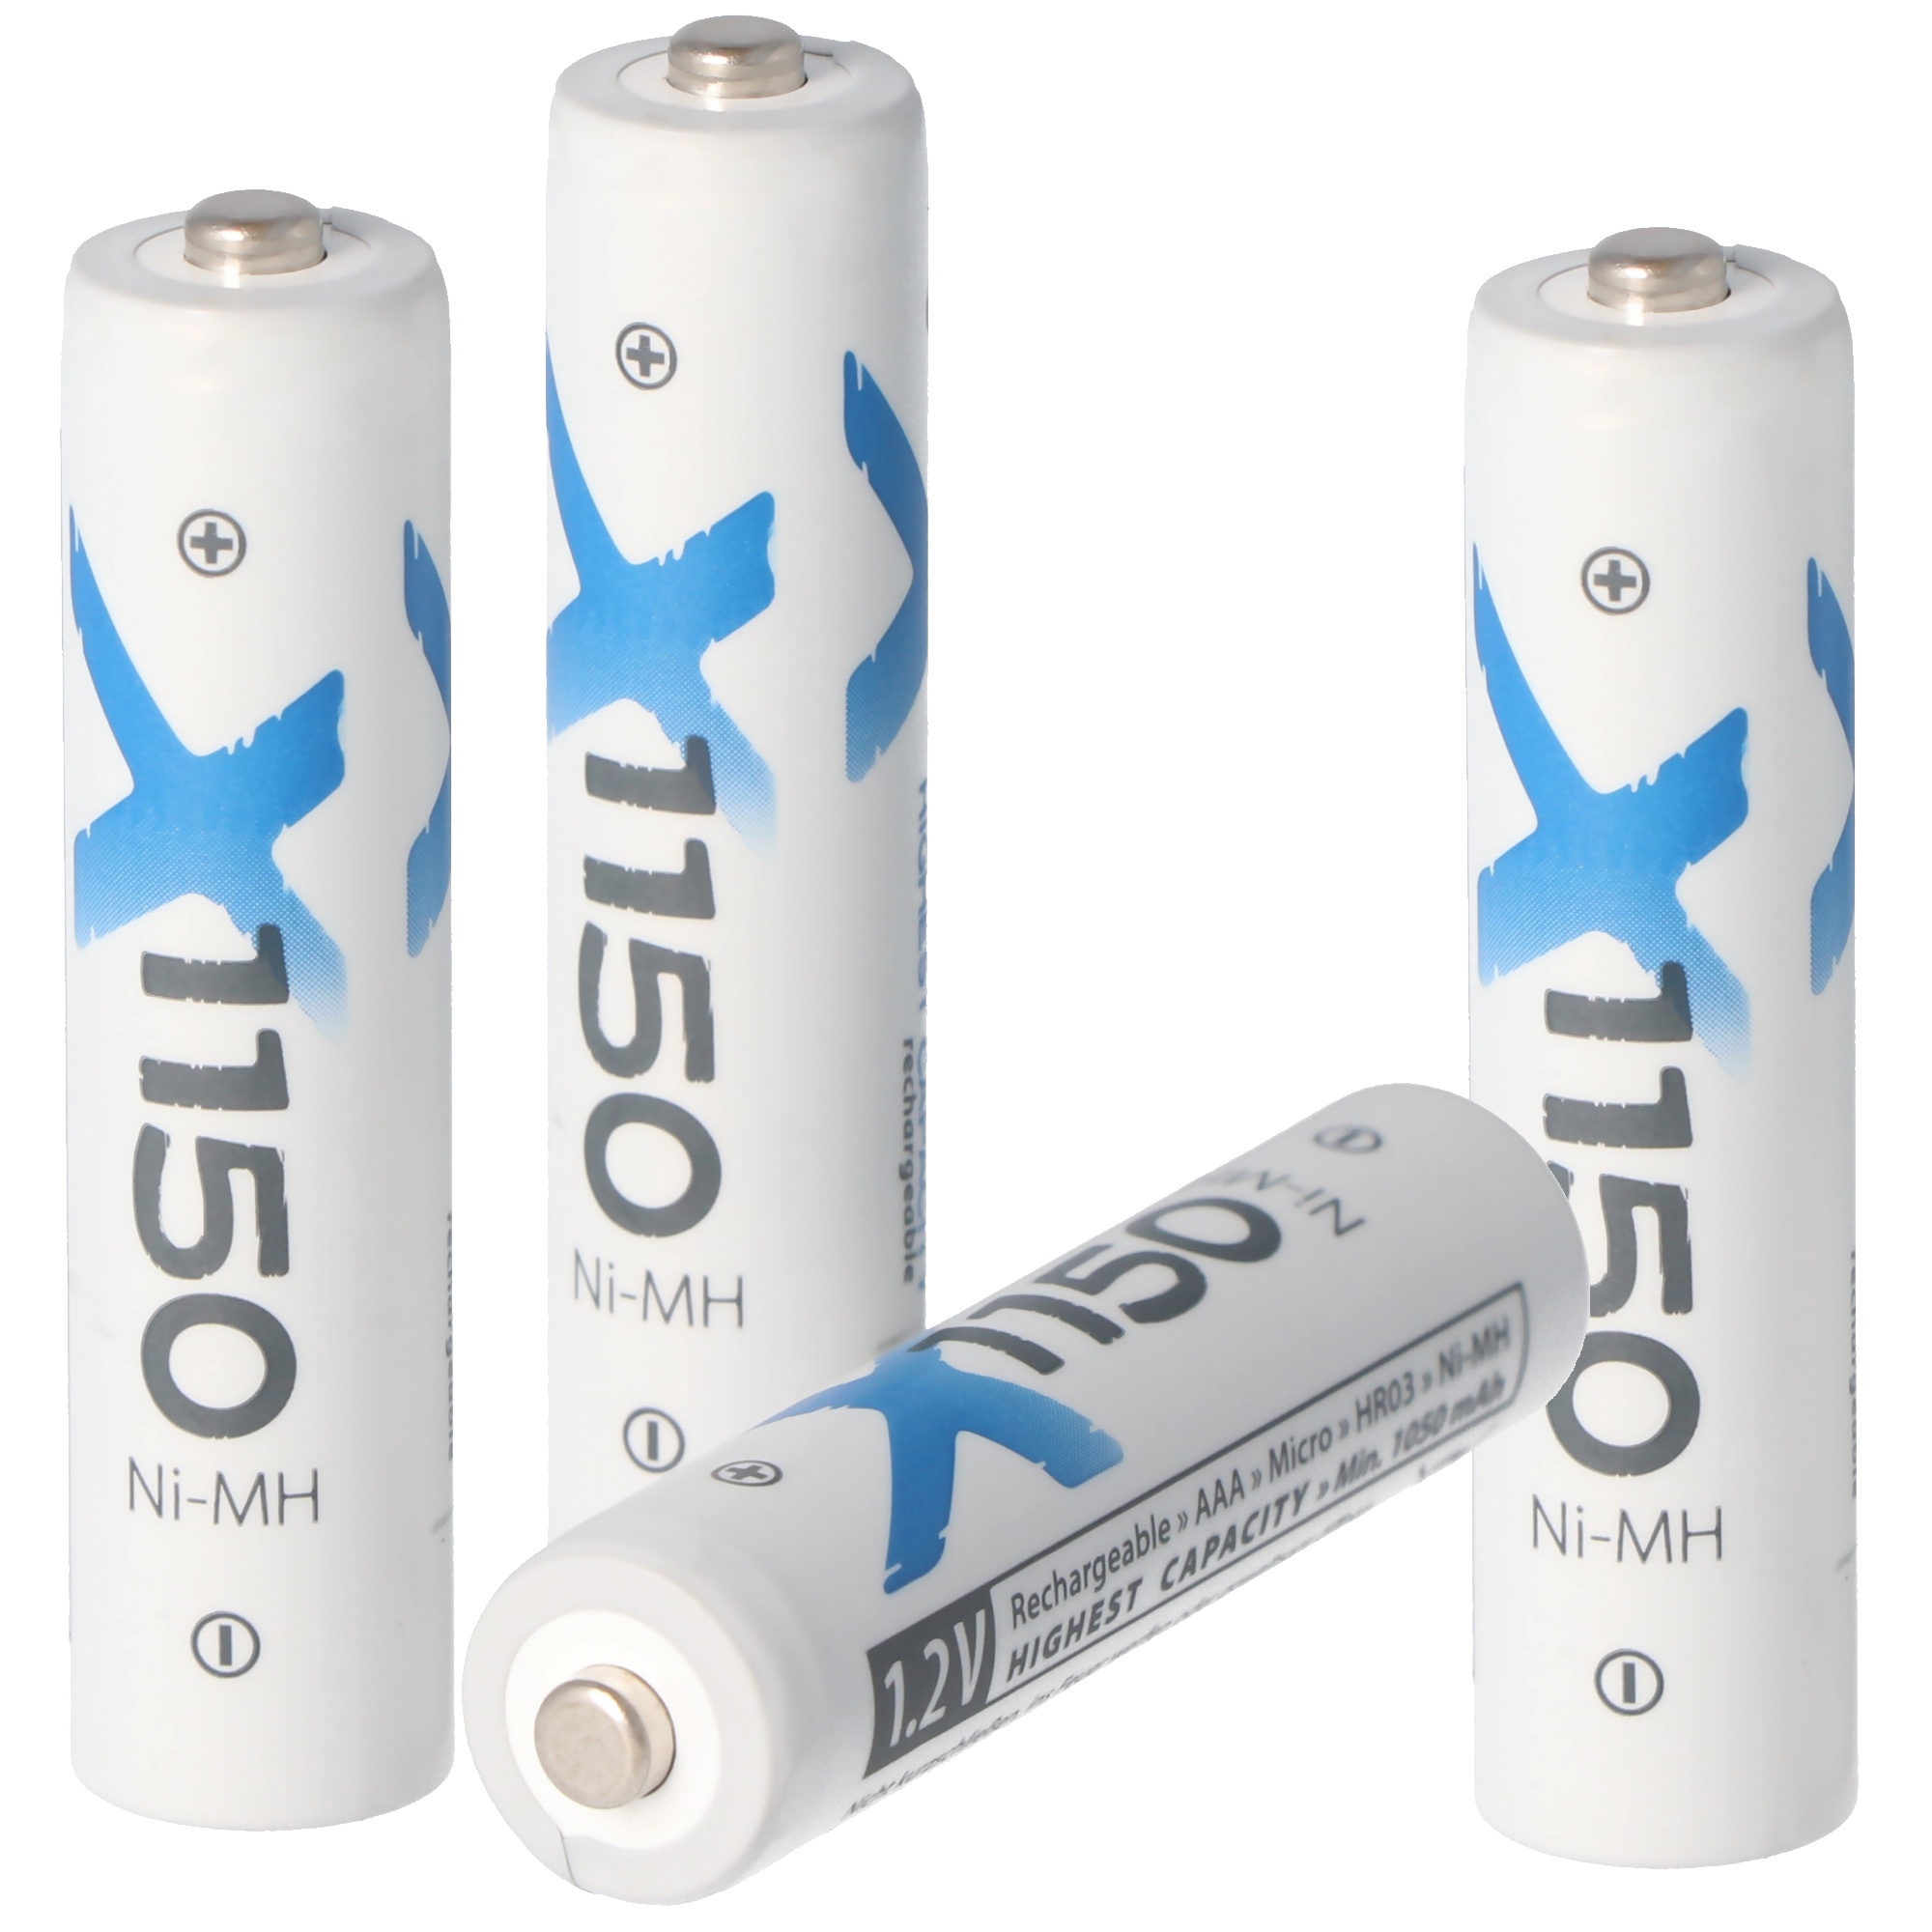 Batterie lithium-ion AAA 1.5V 1100mWh - 700mAh rechargeable uniquement avec  un chargeur spécial